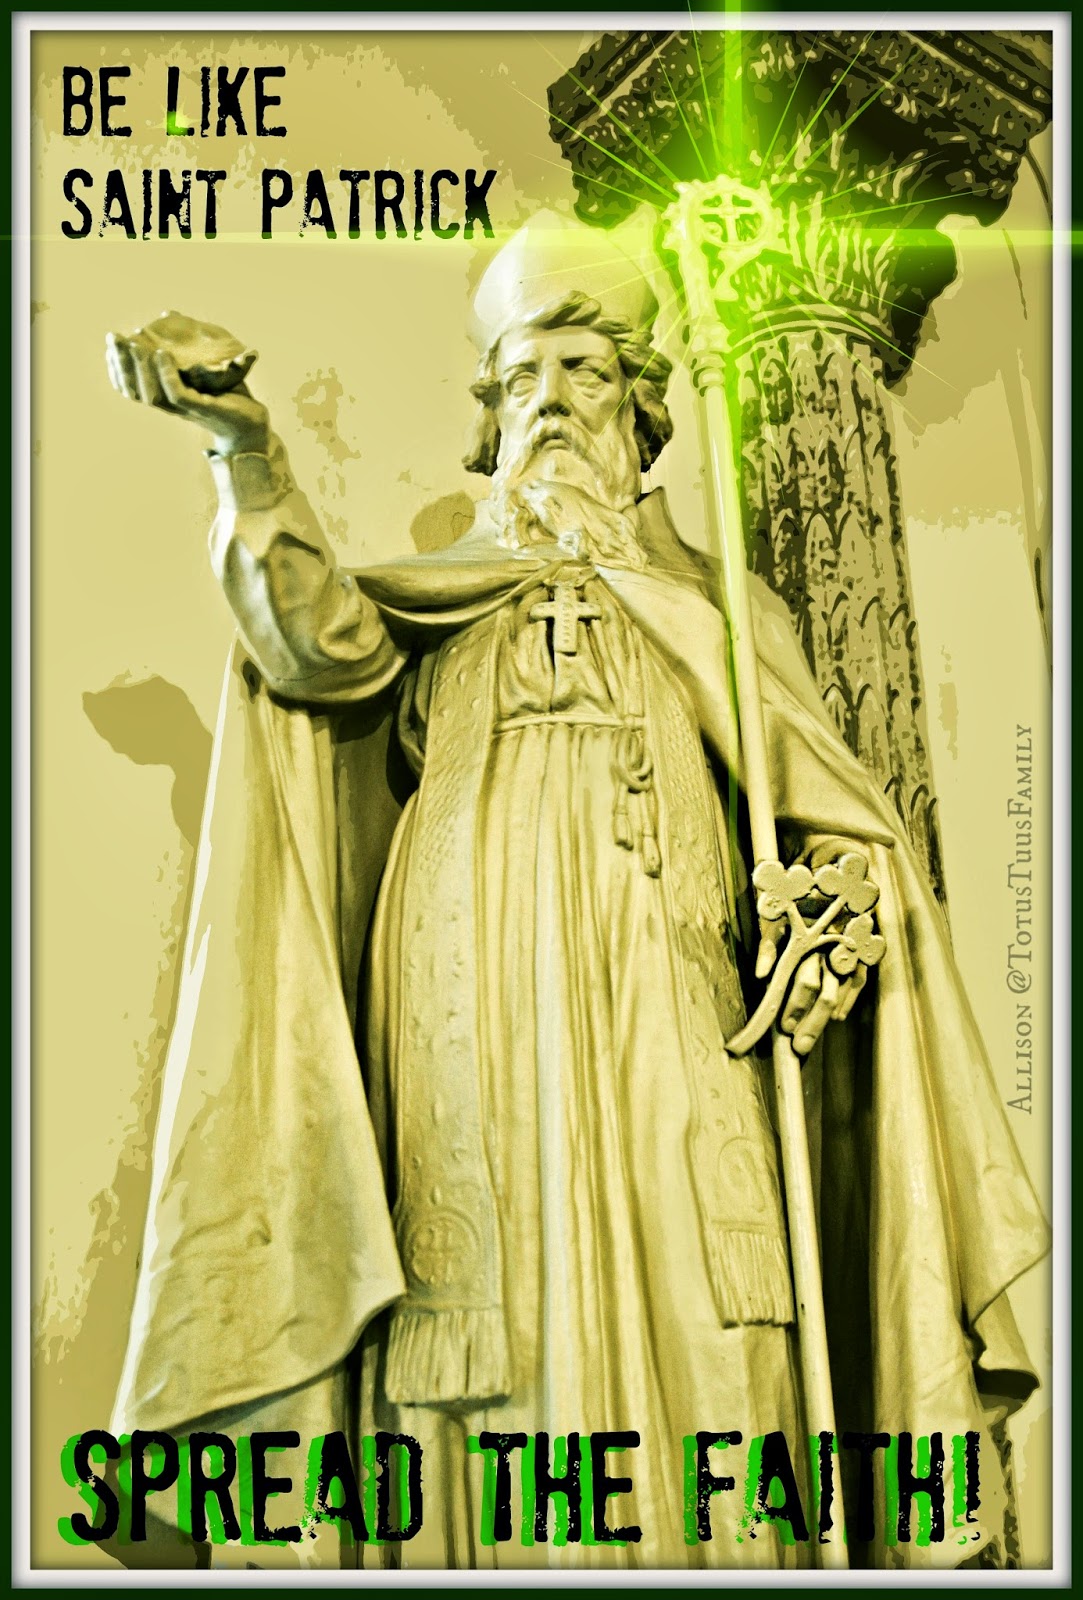 St.+Patrick+statue+spread+the+faith.jpg